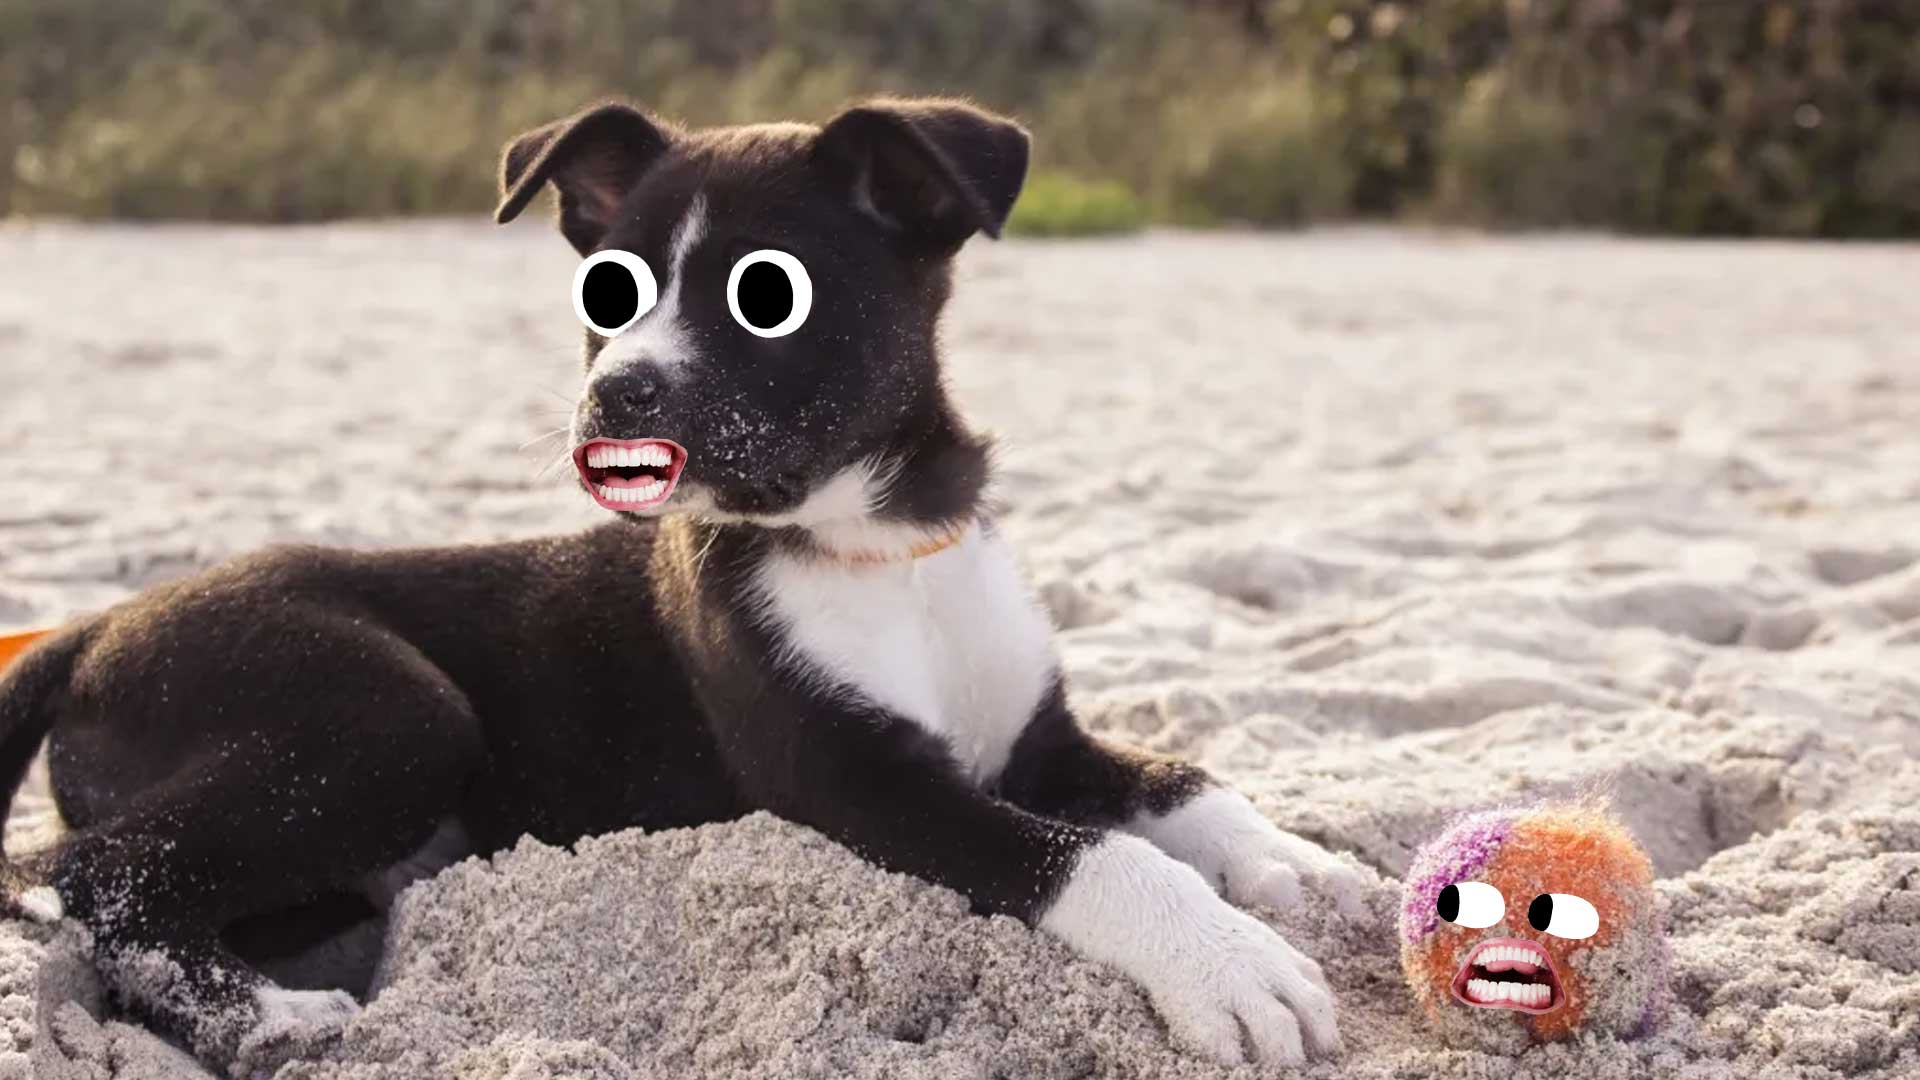 A puppy on a sandy beach with a ball